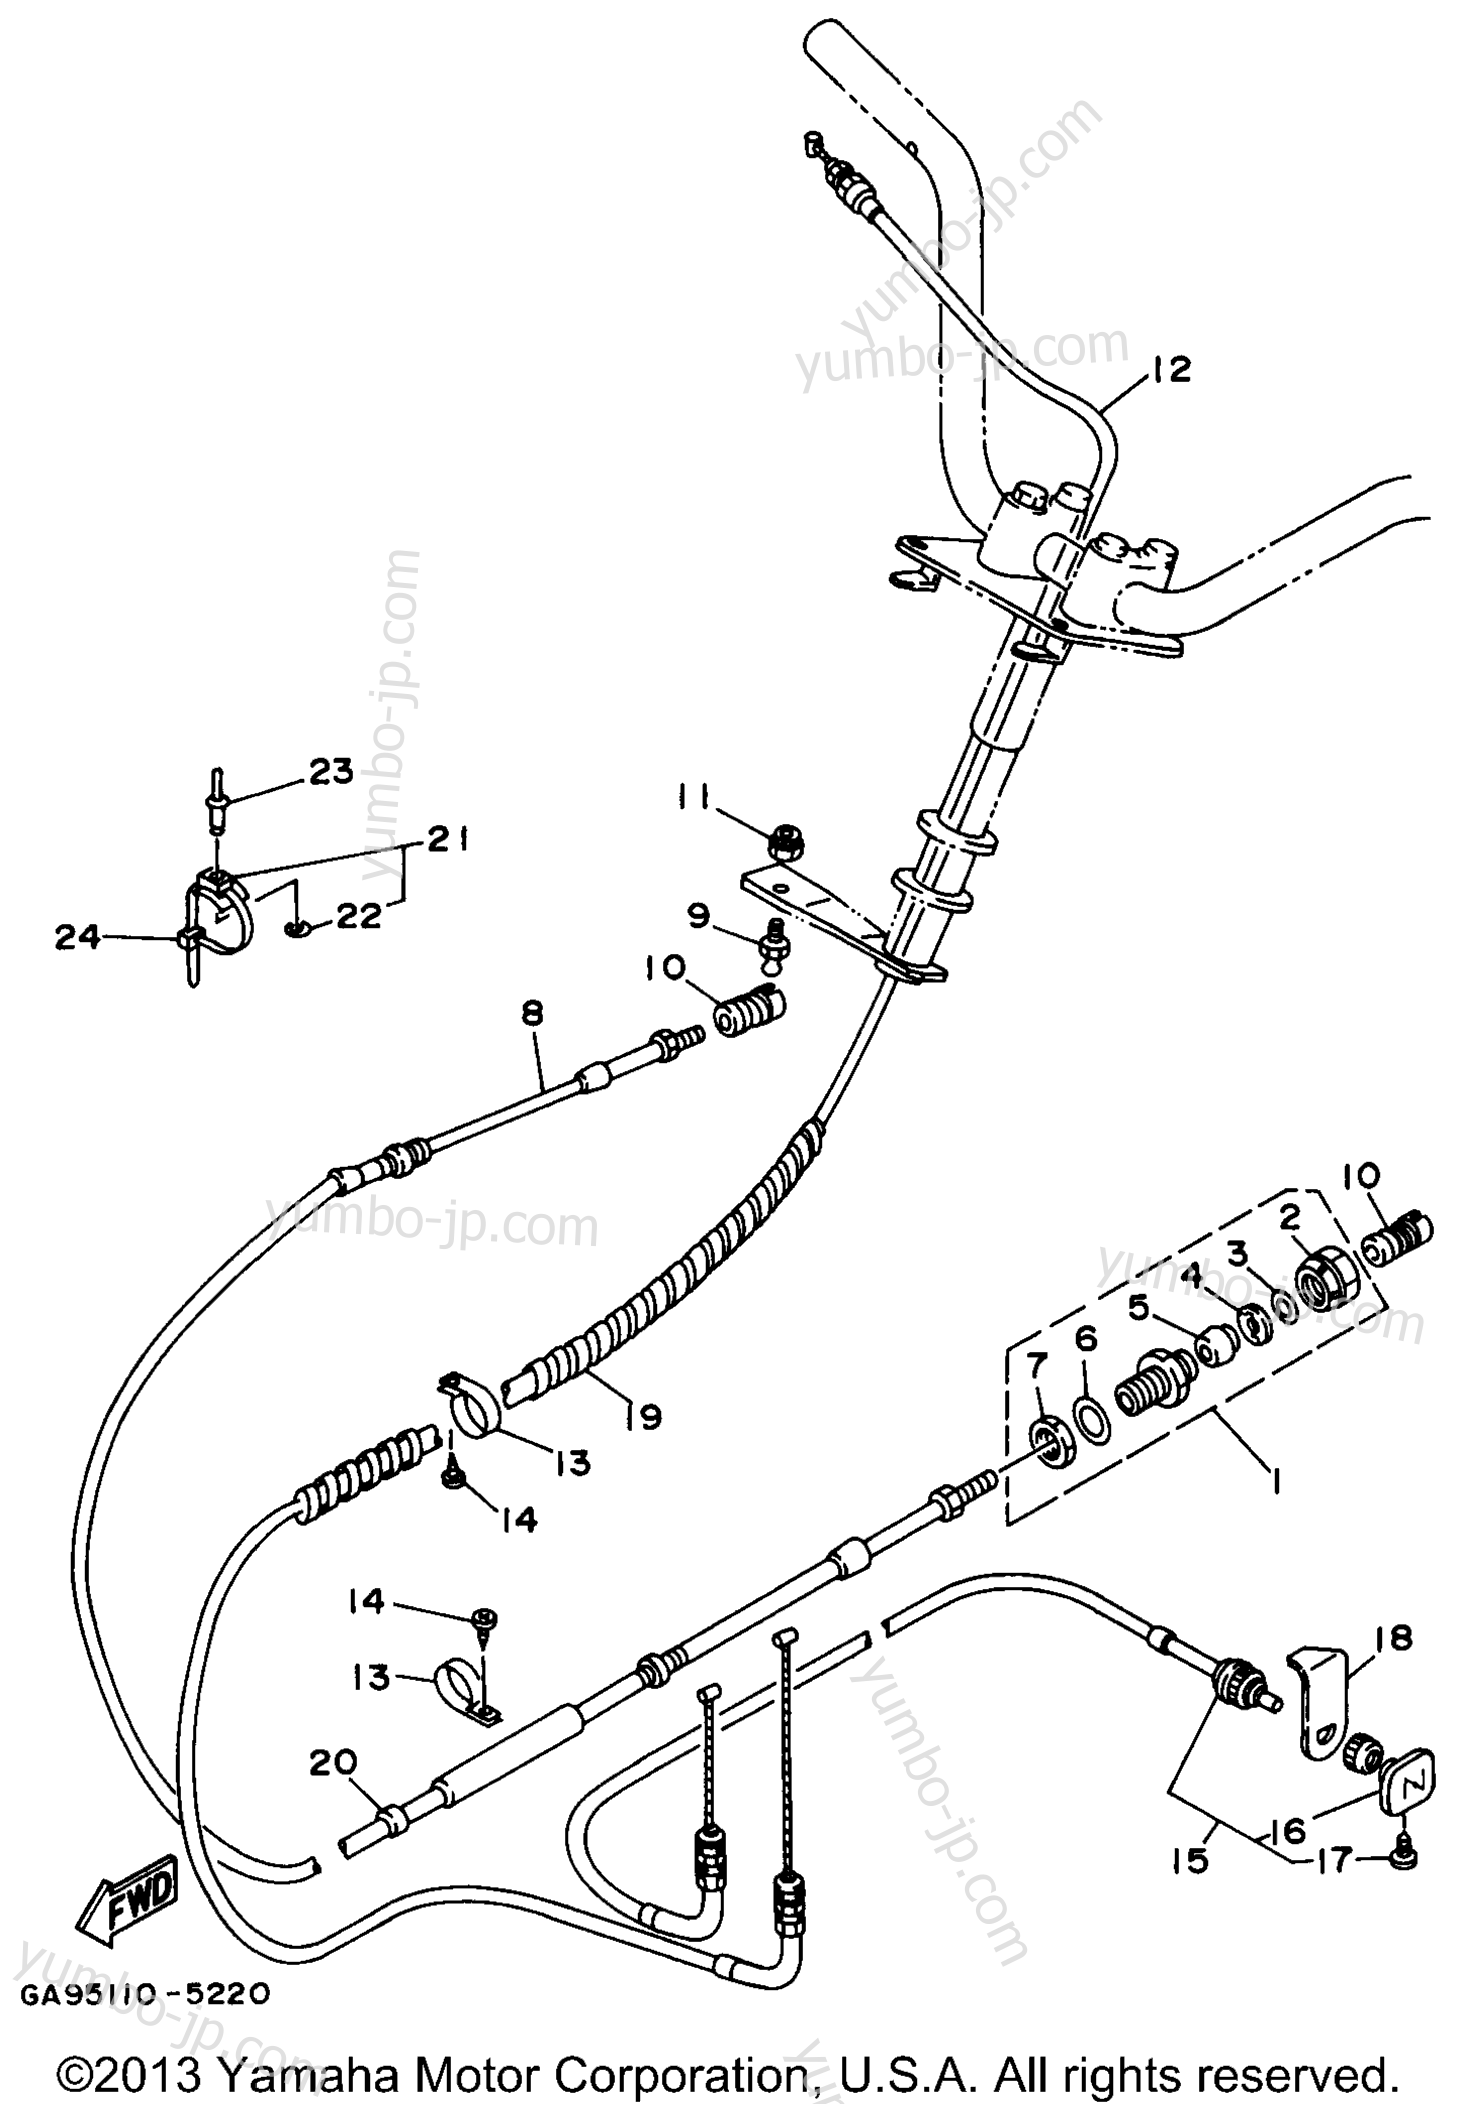 Устройство дистанционного управления / Кабеля для гидроциклов YAMAHA WAVE RUNNER III (WRA650U) 1996 г.